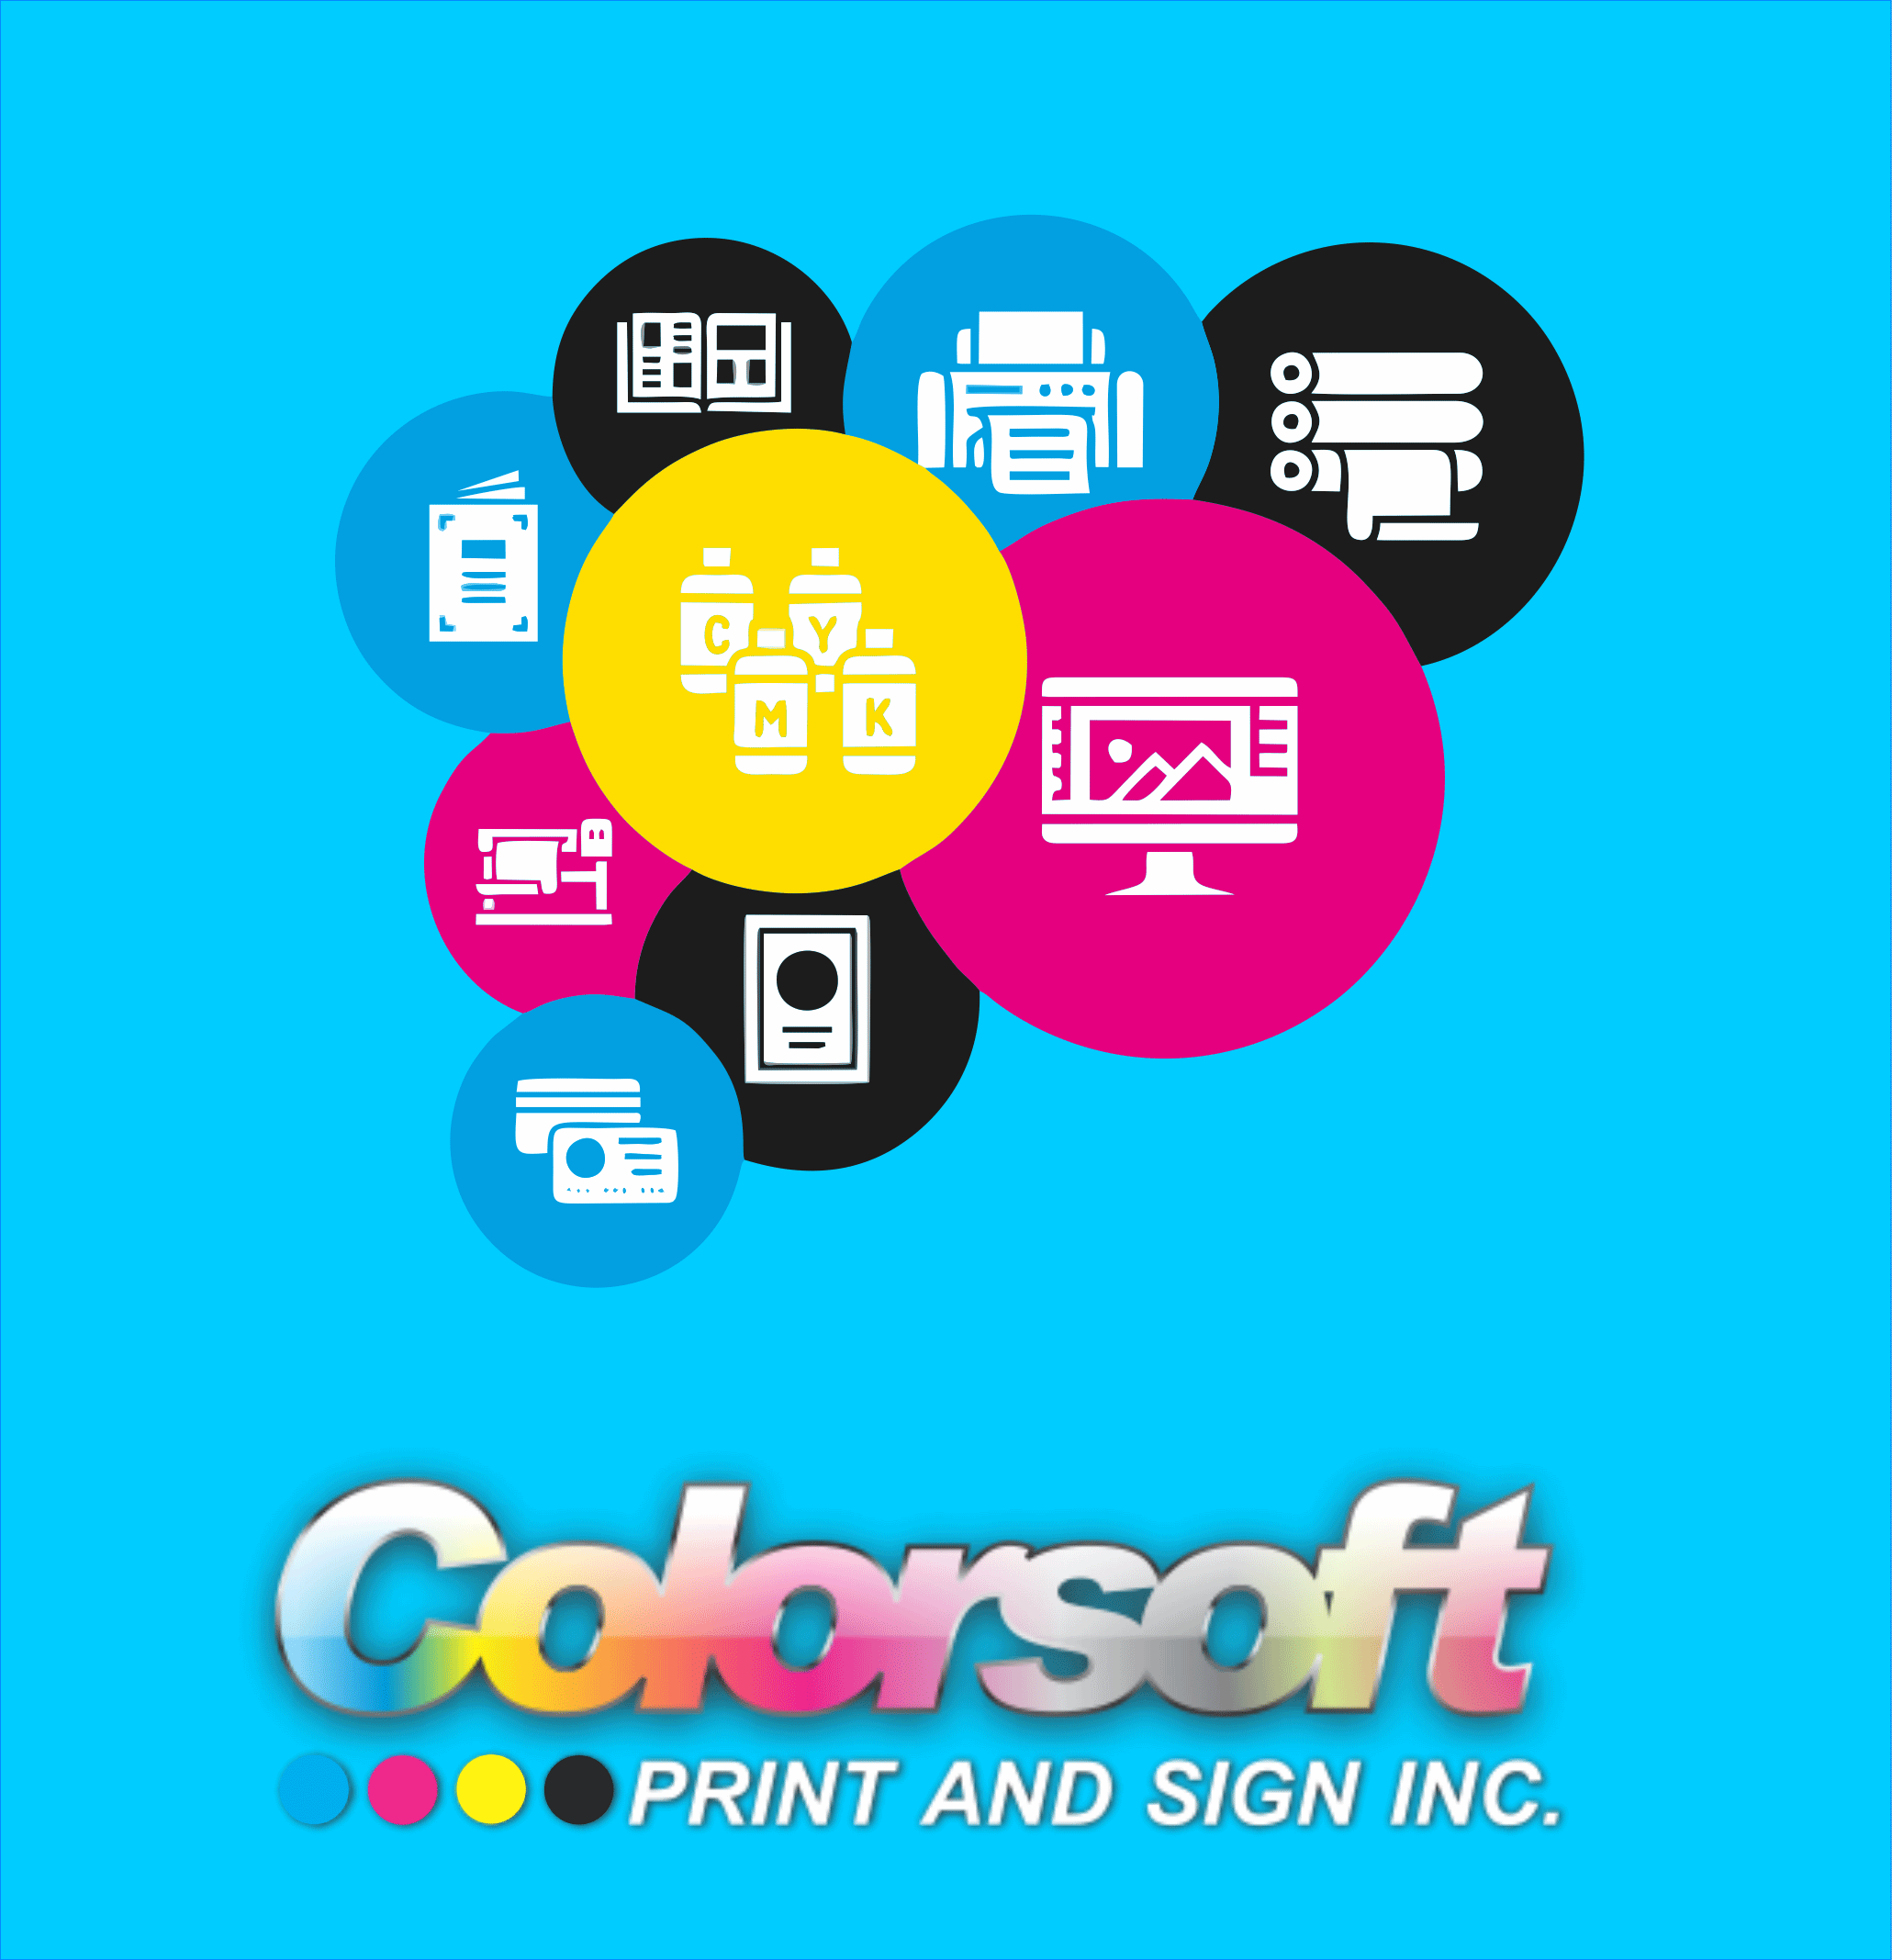 Printing - Dot Graphics, Inc.